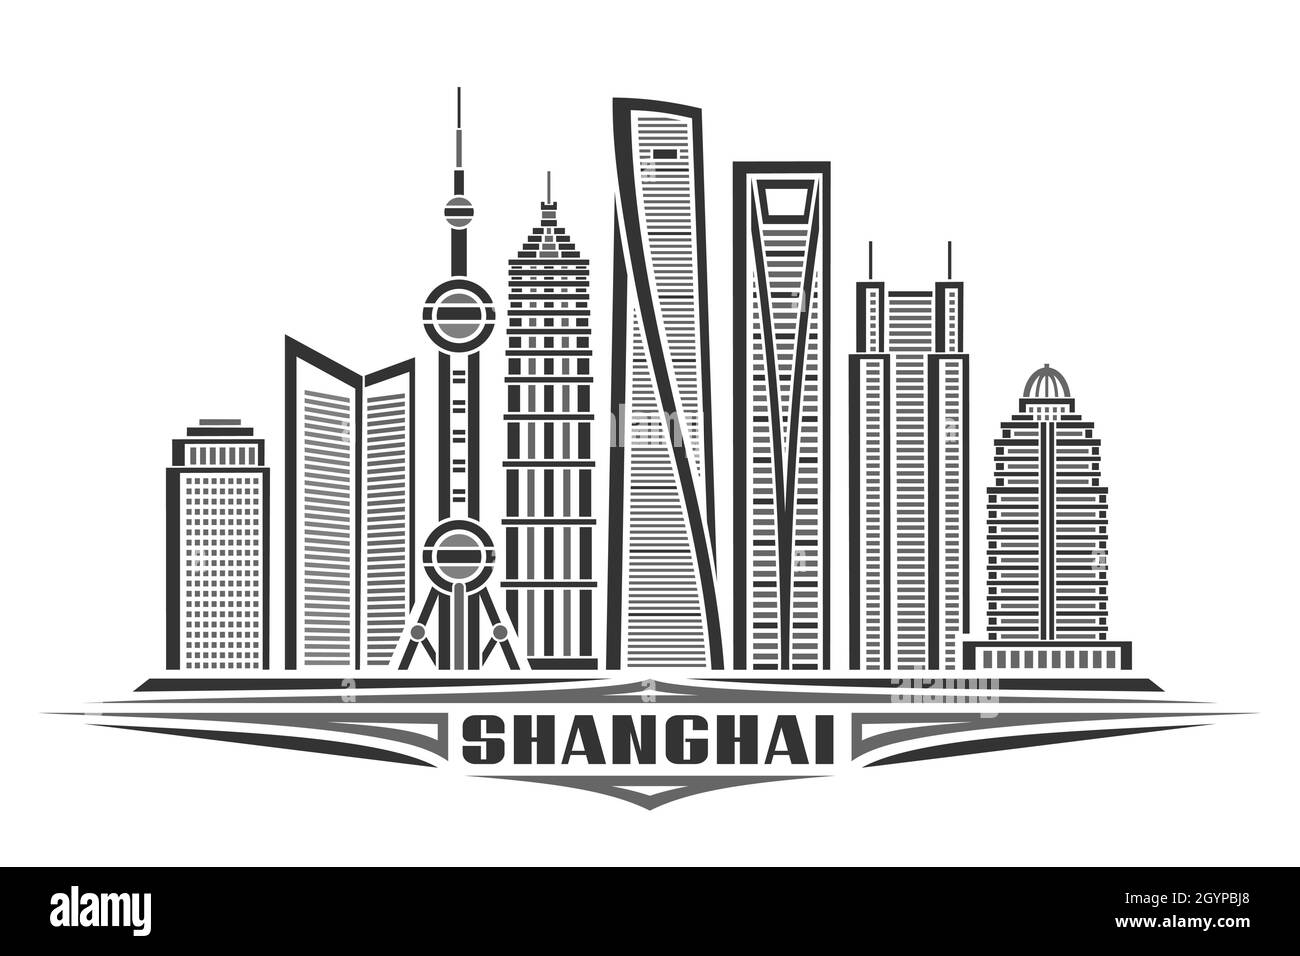 Illustrazione vettoriale di Shanghai, poster orizzontale monocromatico con disegno lineare paesaggio urbano di Shanghai, concetto di arte urbana asiatica con lenza decorativa Illustrazione Vettoriale